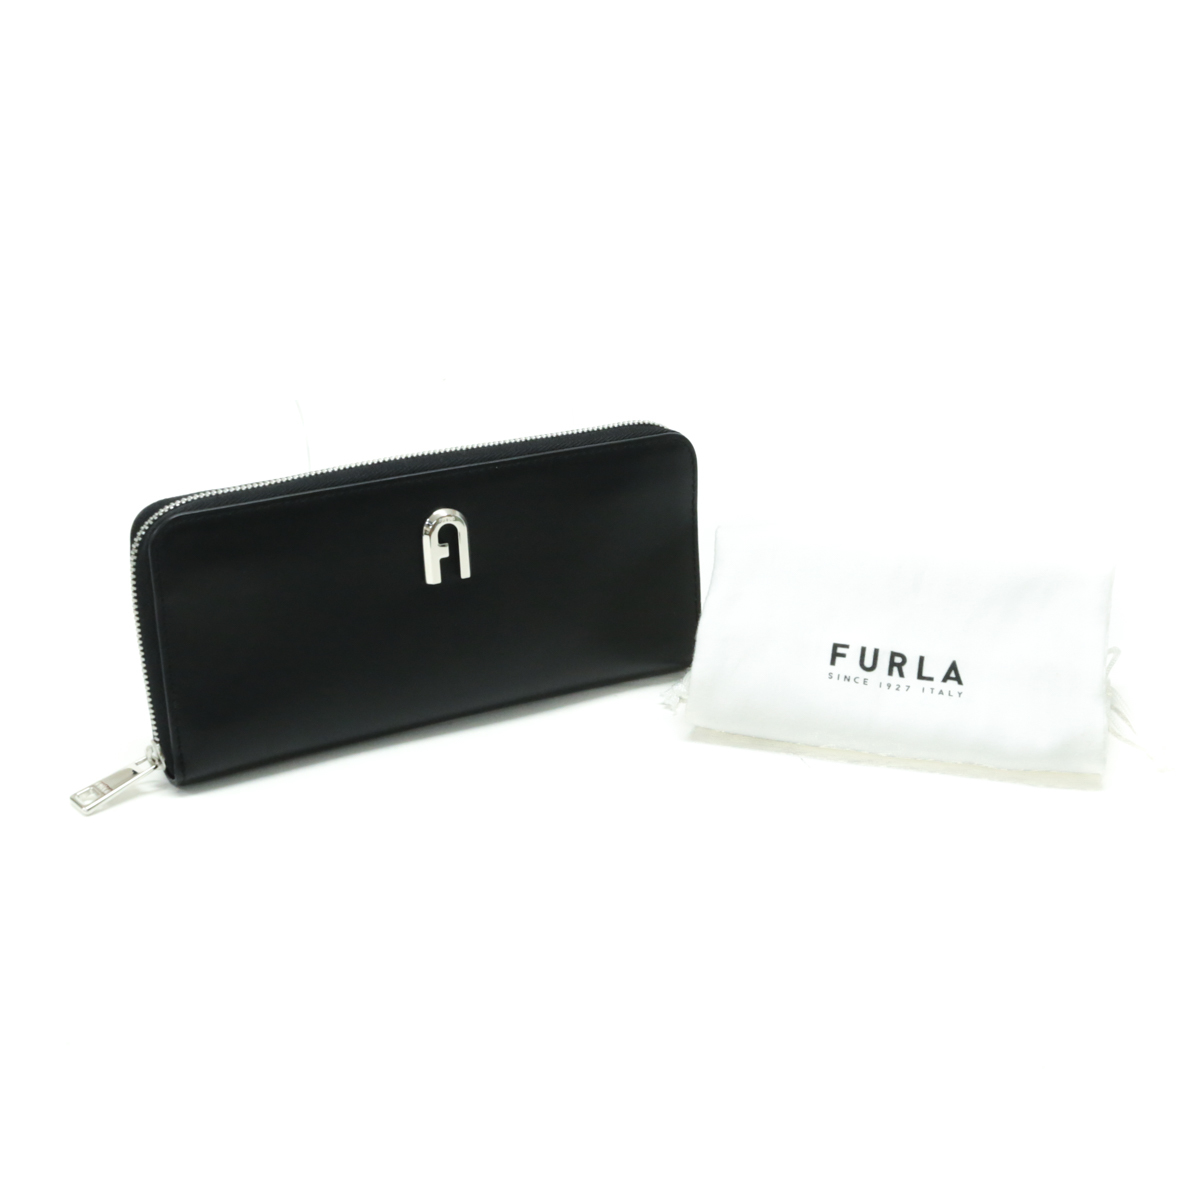 フルラ FURLA ムーン XL レザー アーチロゴ WP00161 長財布 ラウンドファスナー ロングウォレット メンズ ネロ (ブラック) 美品 中古